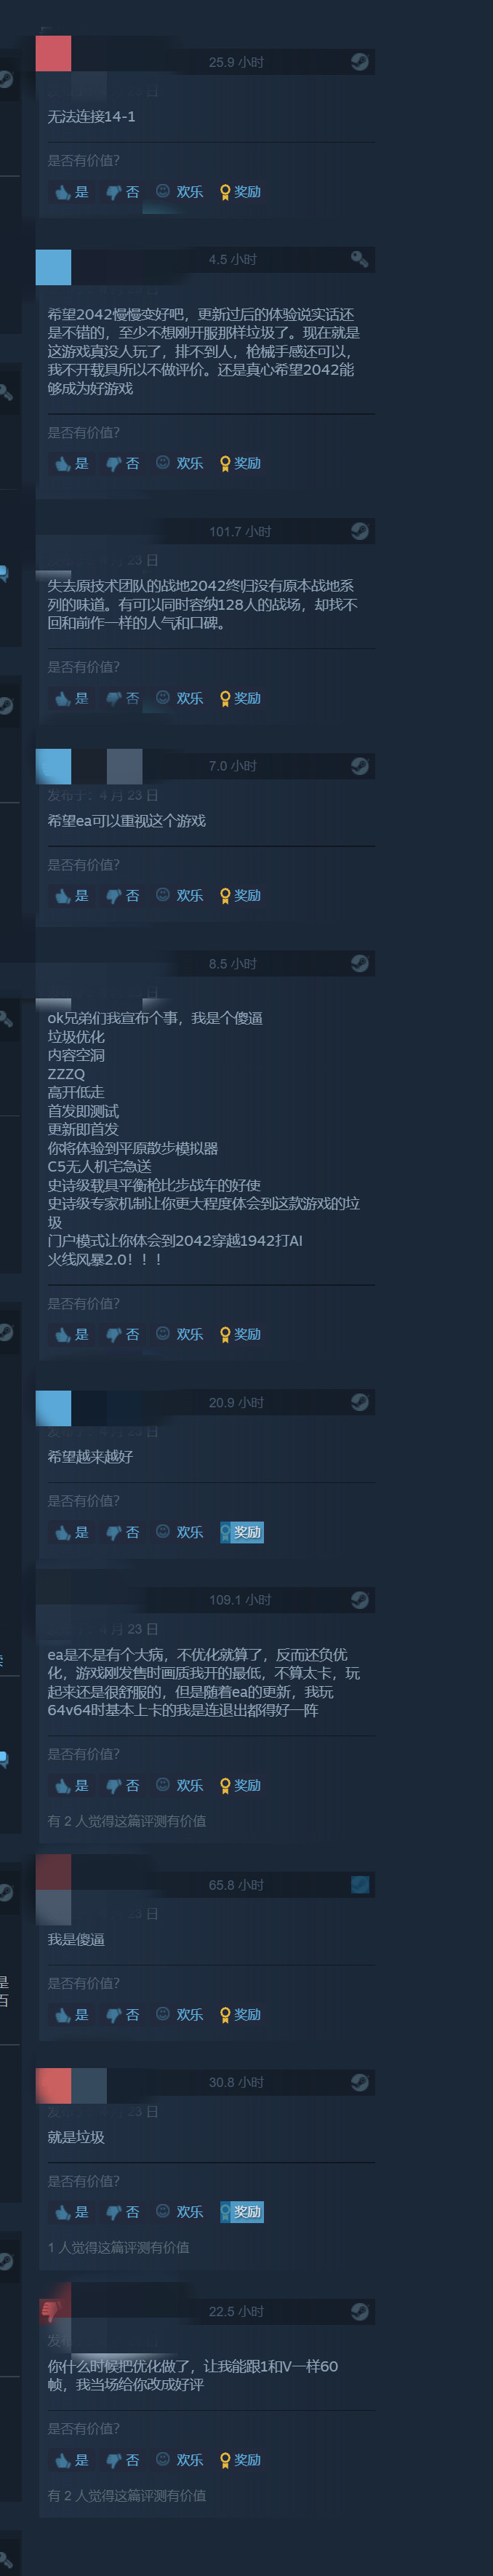 《戰地風雲2042》大更新後 Steam在線玩家突破4000人